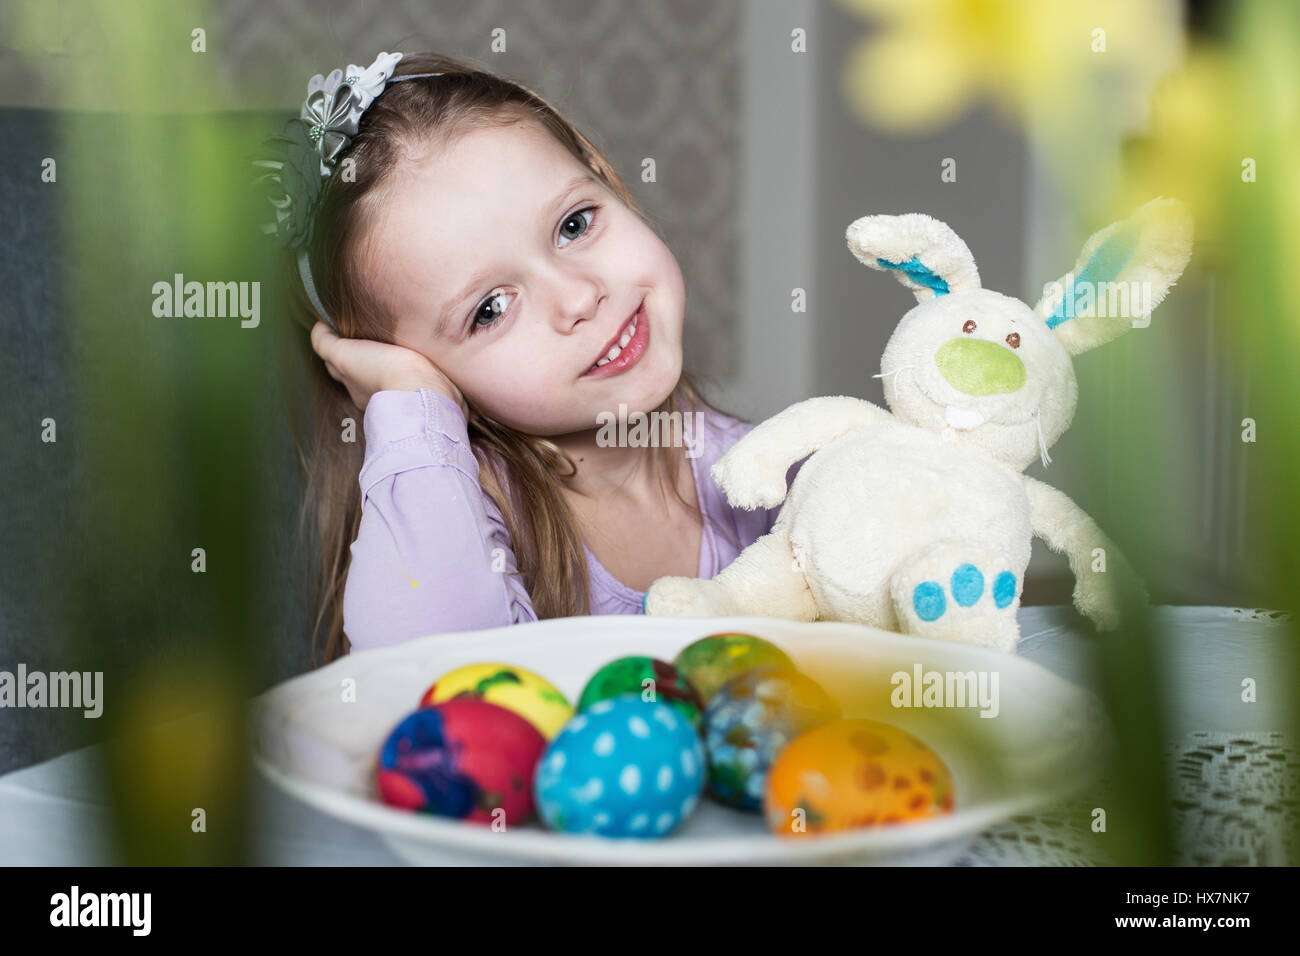 Süßes Kind mit Ostereiern und Plüsch Hase lächelnd. Ostern, Urlaub und Kind Konzept Stockfoto